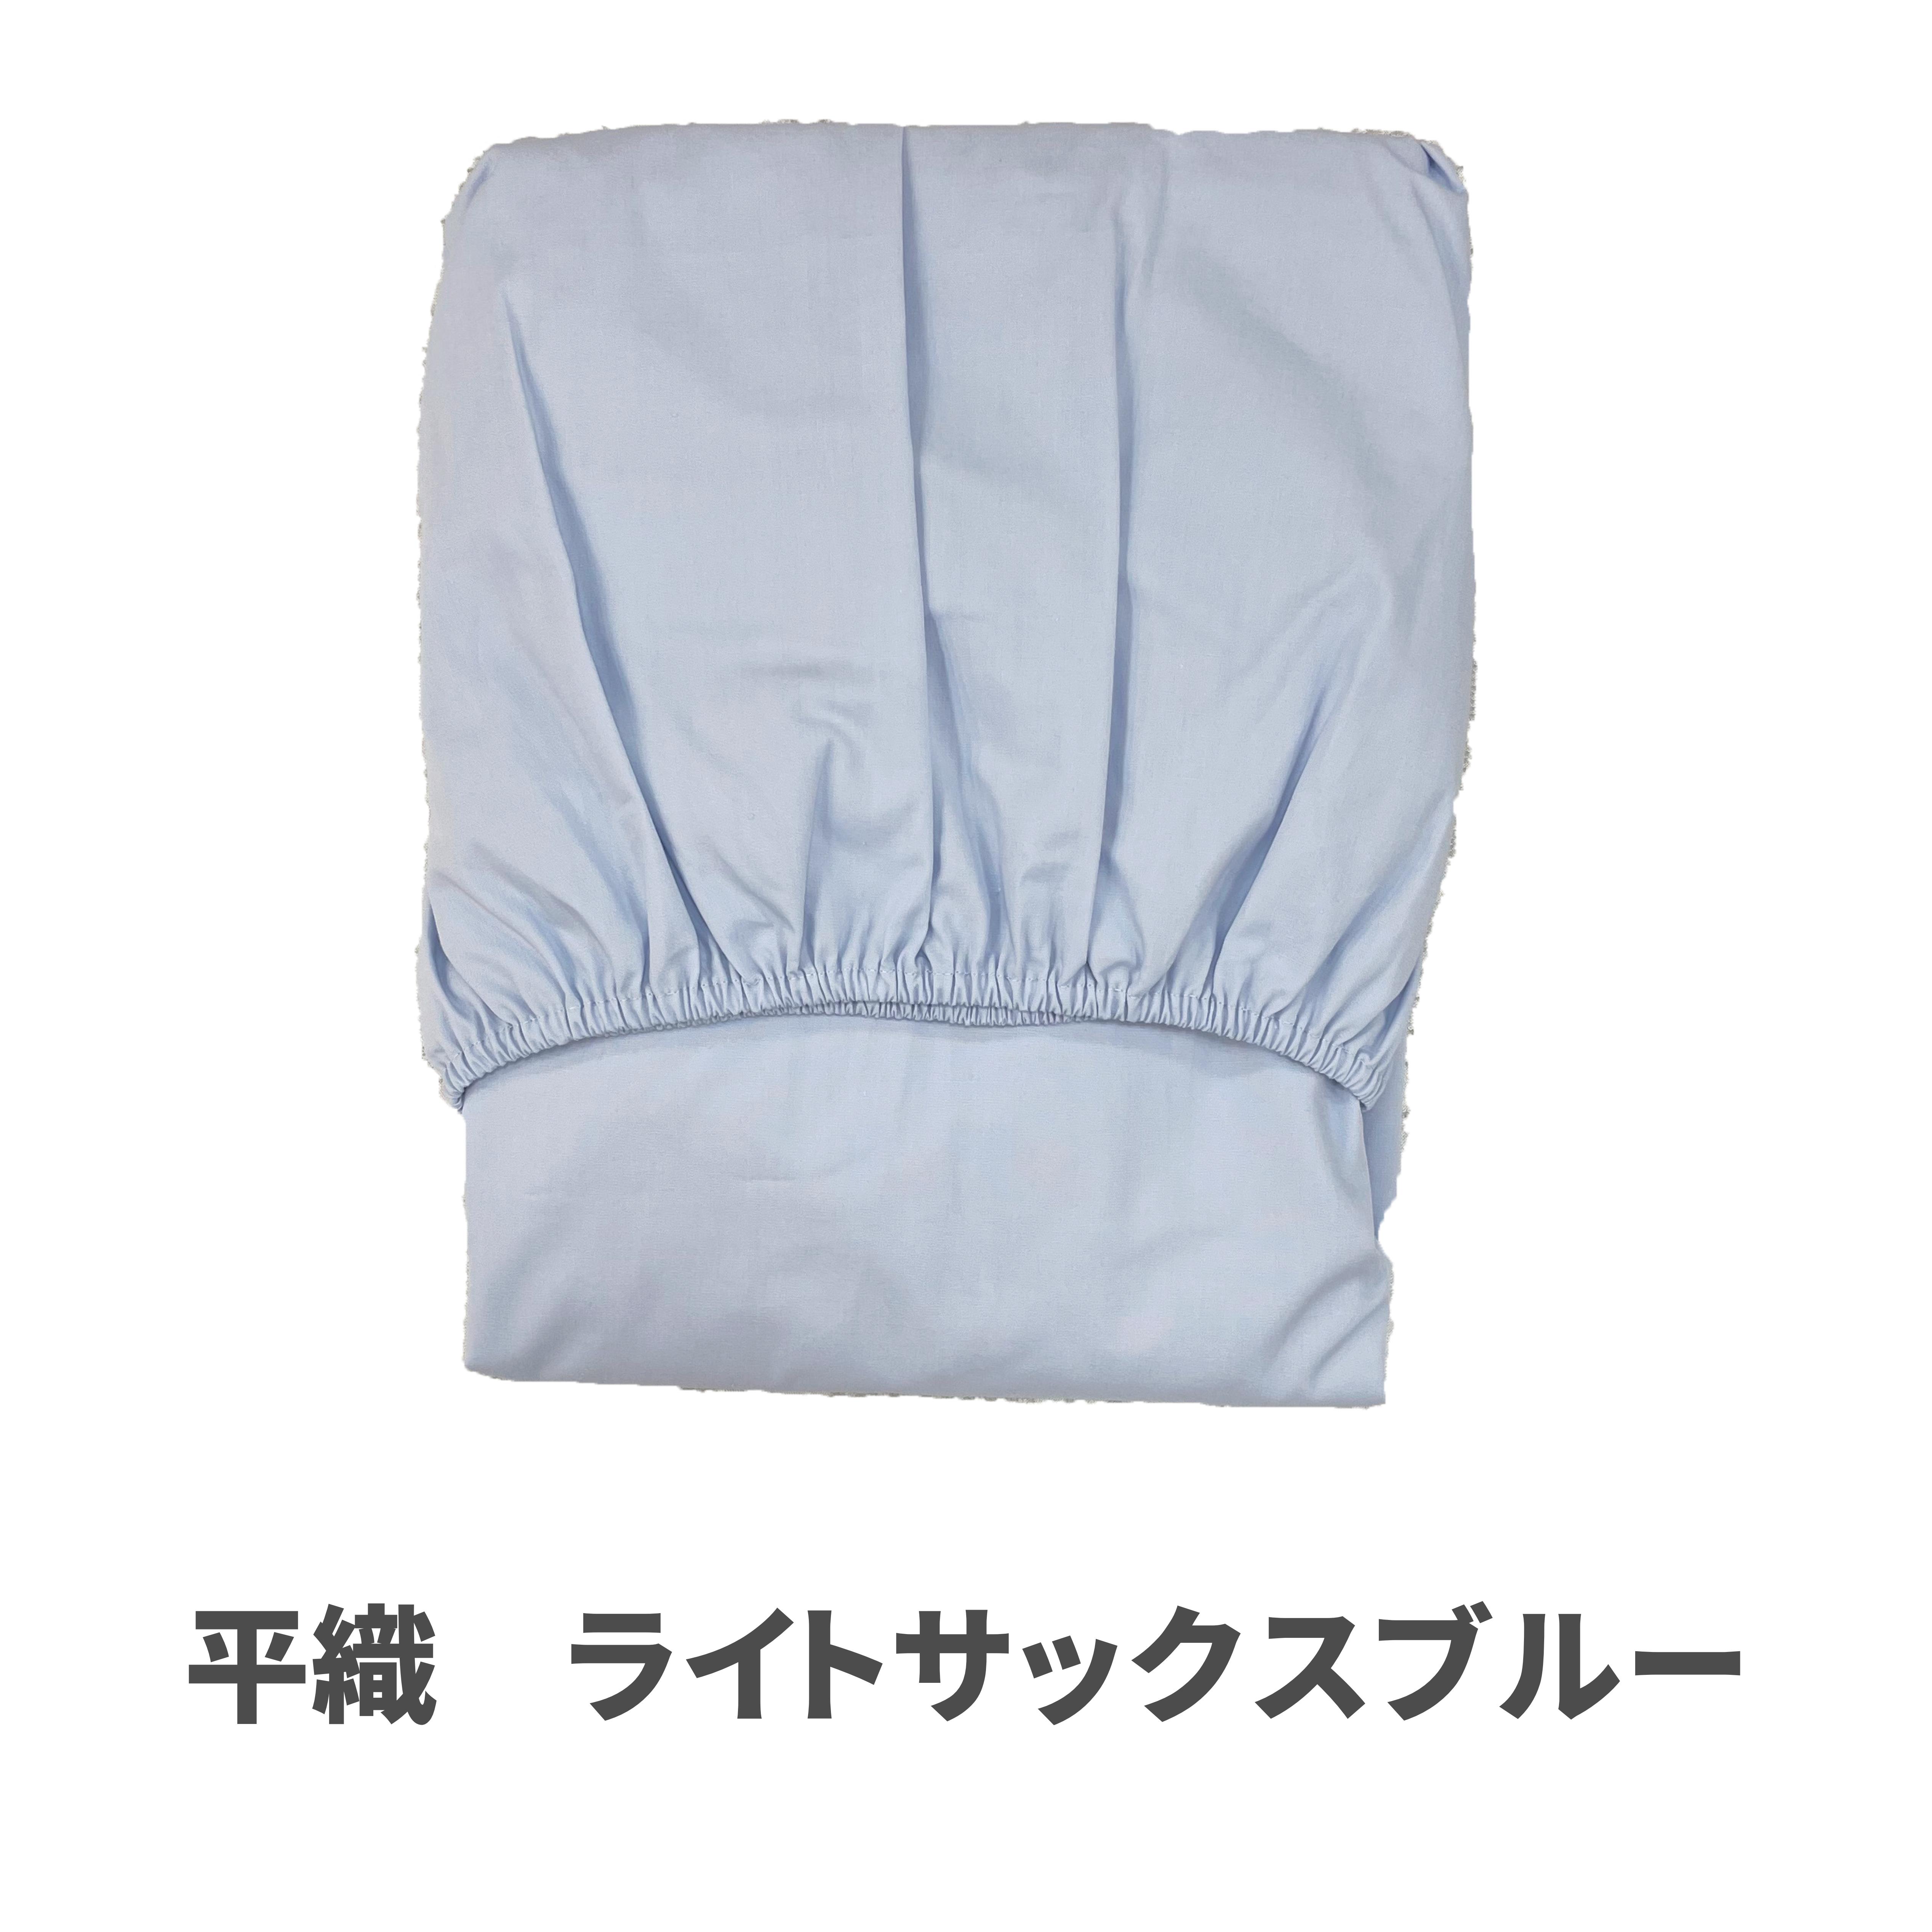 マニフレックス・エアー 三つ折りマットレス用フィットシーツ・カバー シングル 日本製・綿100%  ...